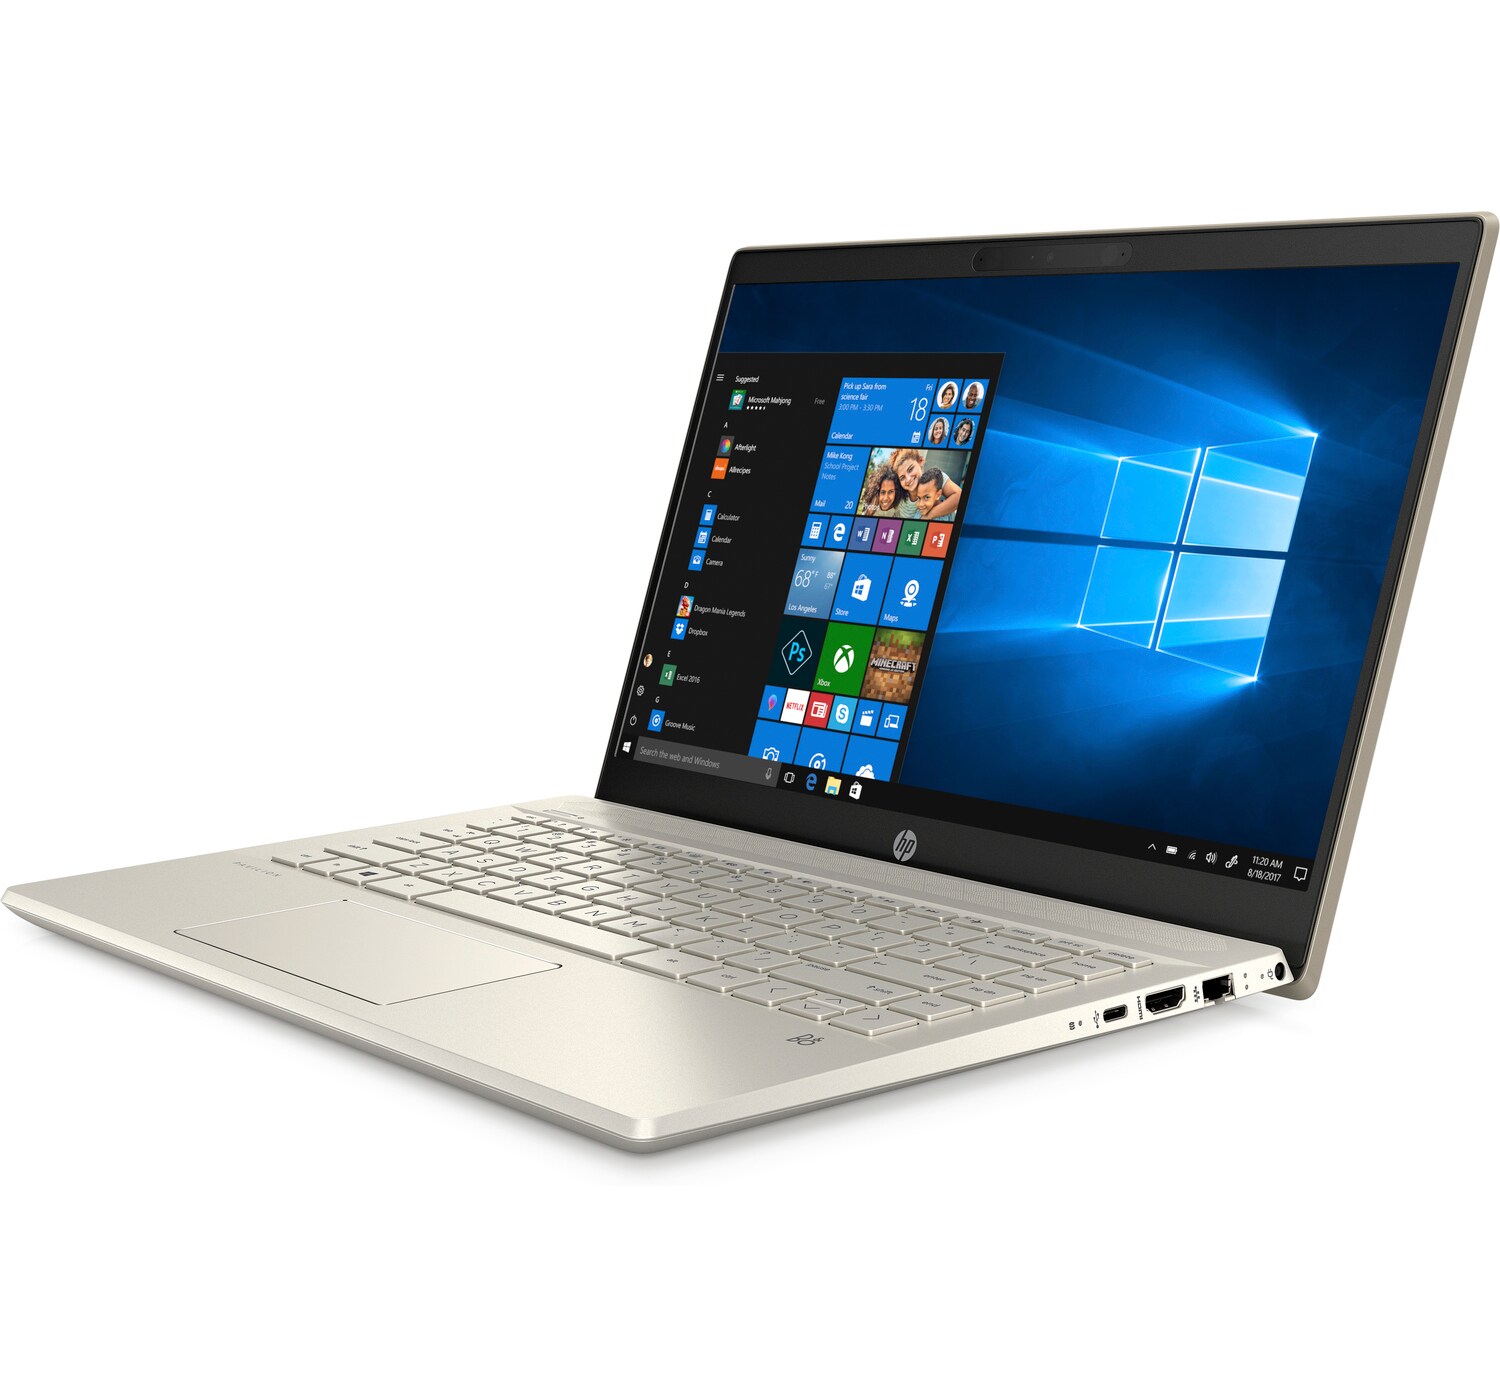  Laptop HP PAVILION 14-CE3026TU (8WH93PA) CORE I5 1035G1 8G 512GB SSD FULL  31328_c06232988